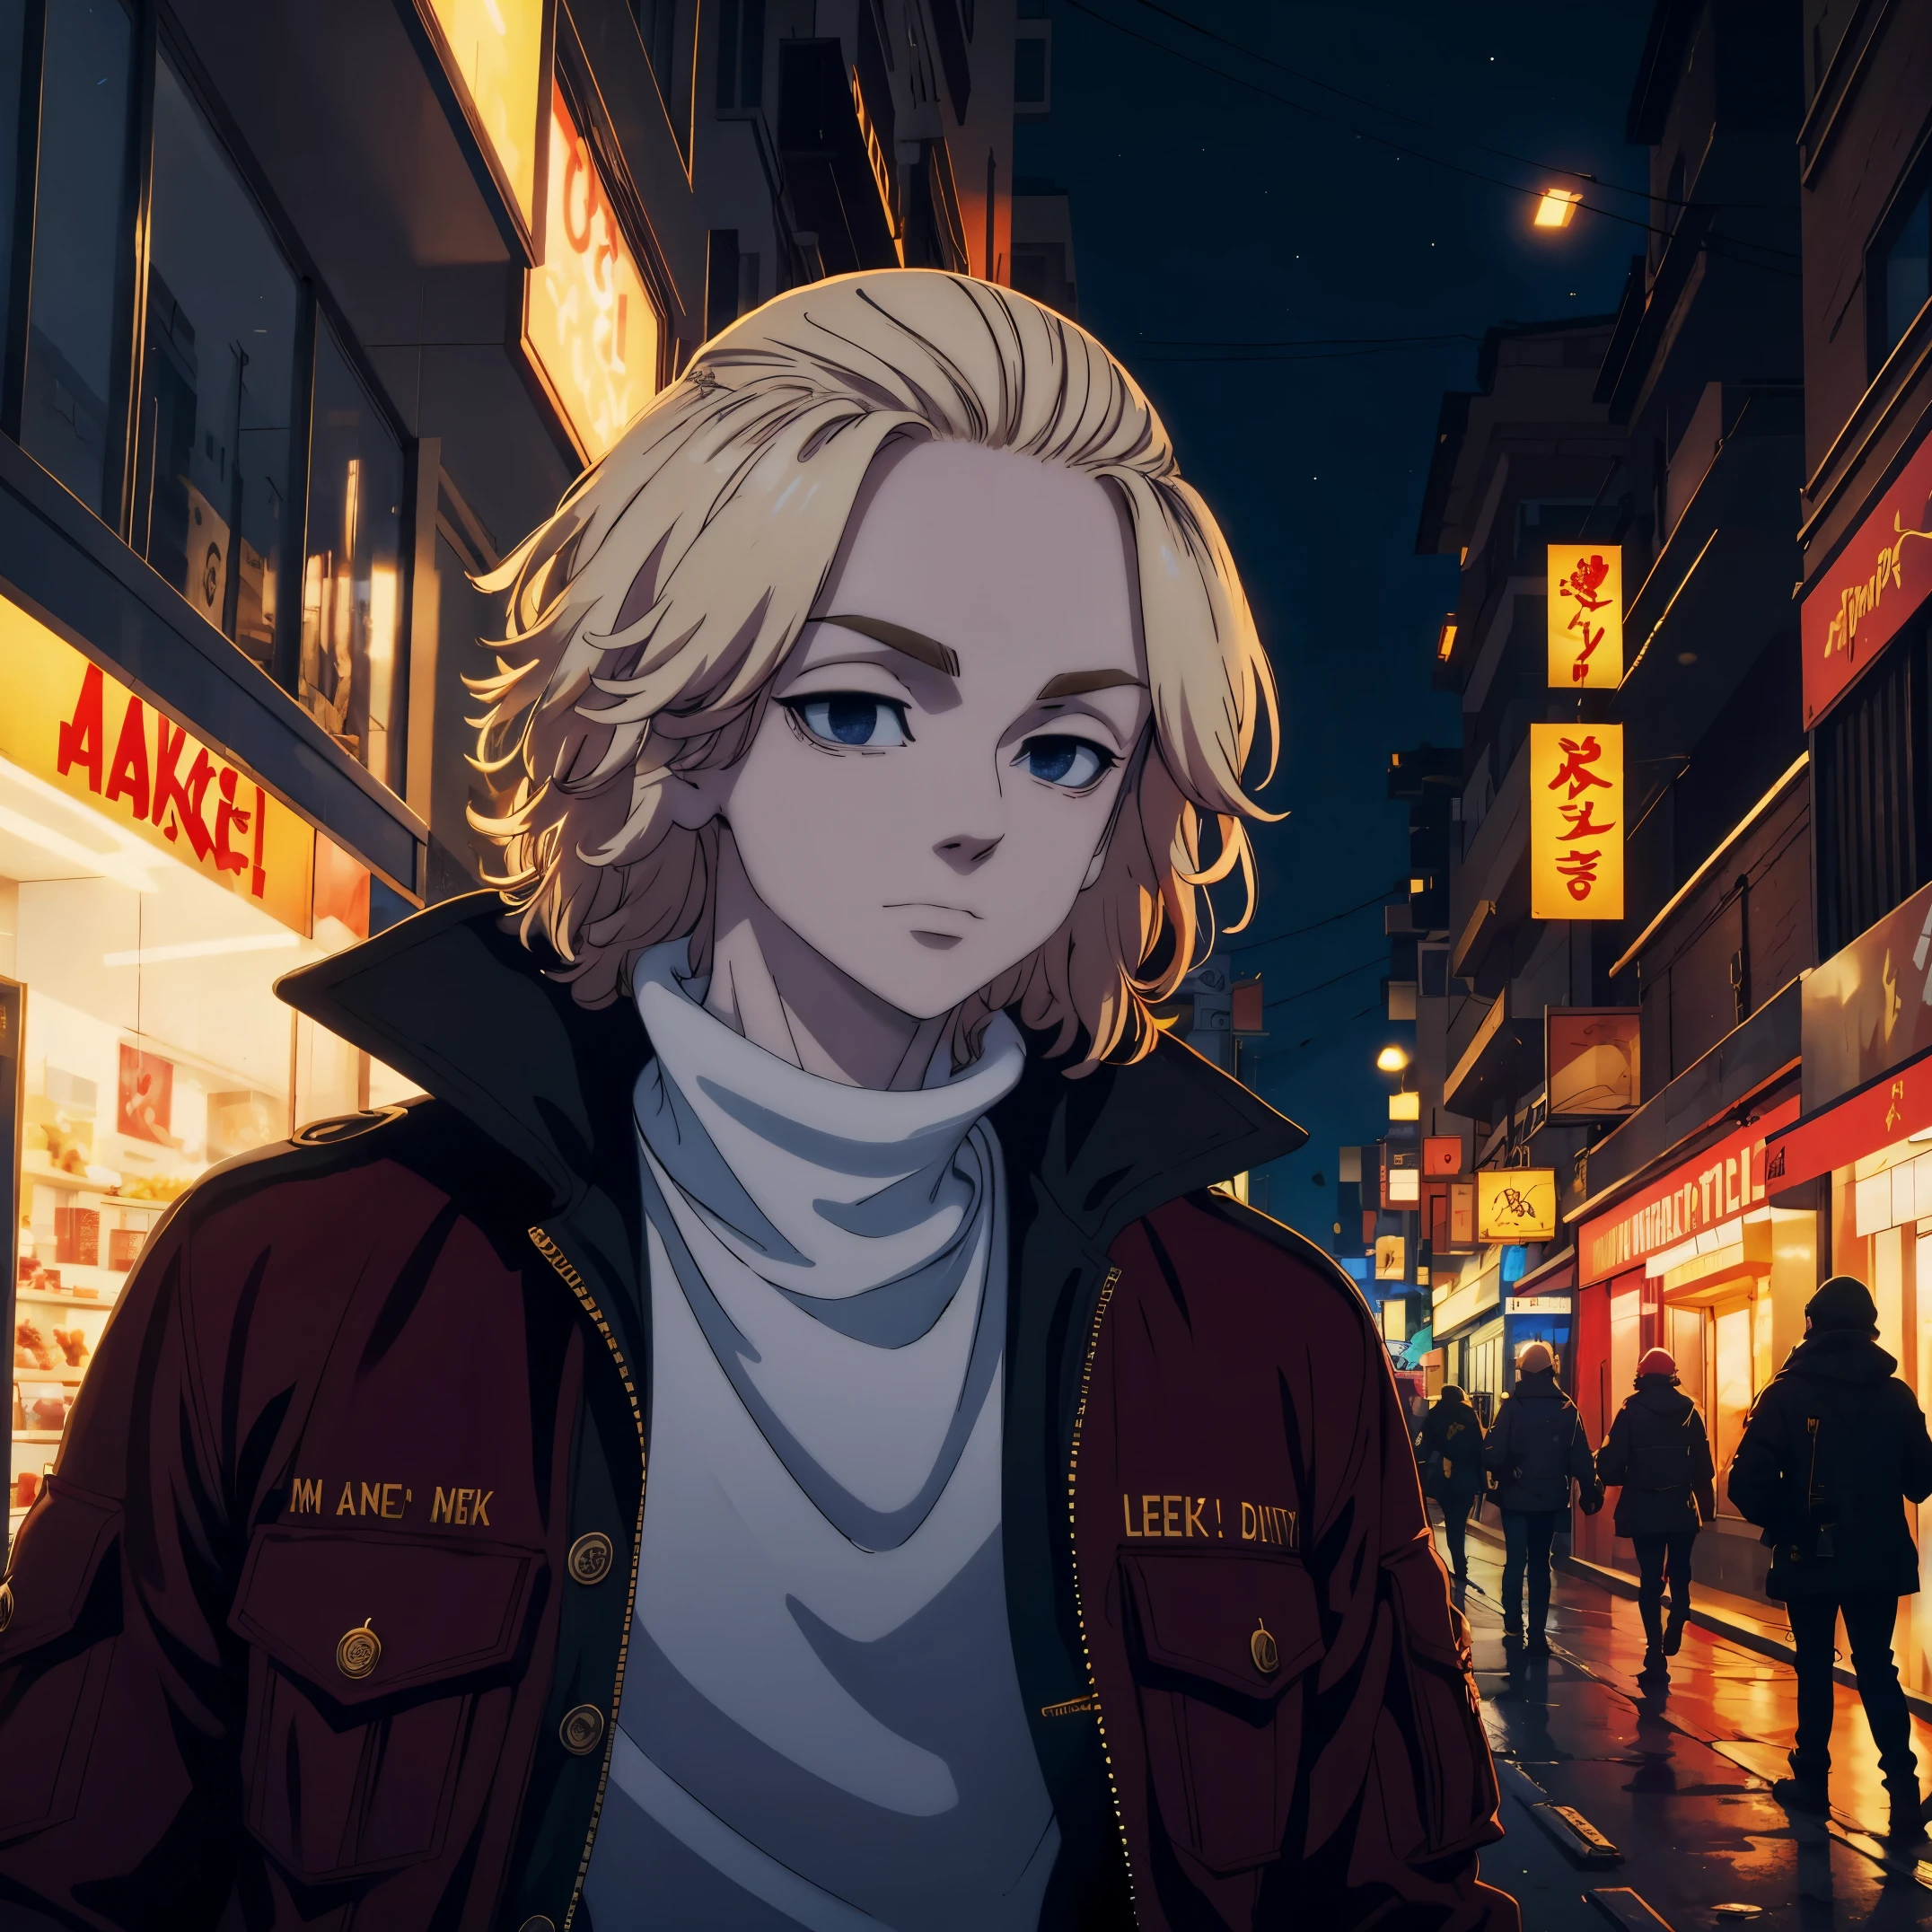 Mikey, com uma jaqueta vermelha, em uma cidade à noite, a cidade está cheia de luzes, e ele tem um rosto calmo